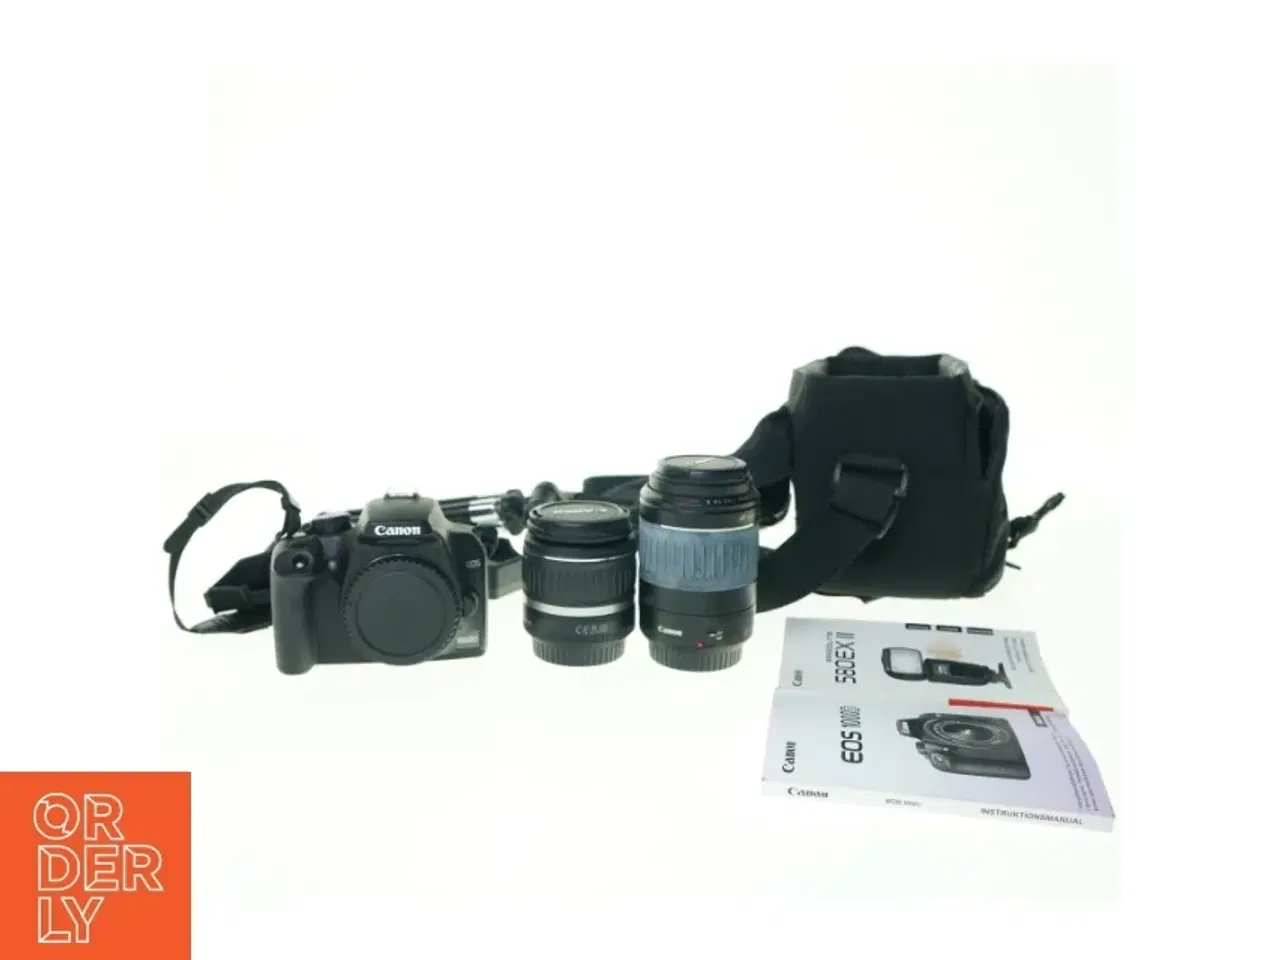 Billede 1 - Spejlreflekskamera EOS 1000D + 580EX II inkl. taske fra Canon (str. 12 x 10 cm)